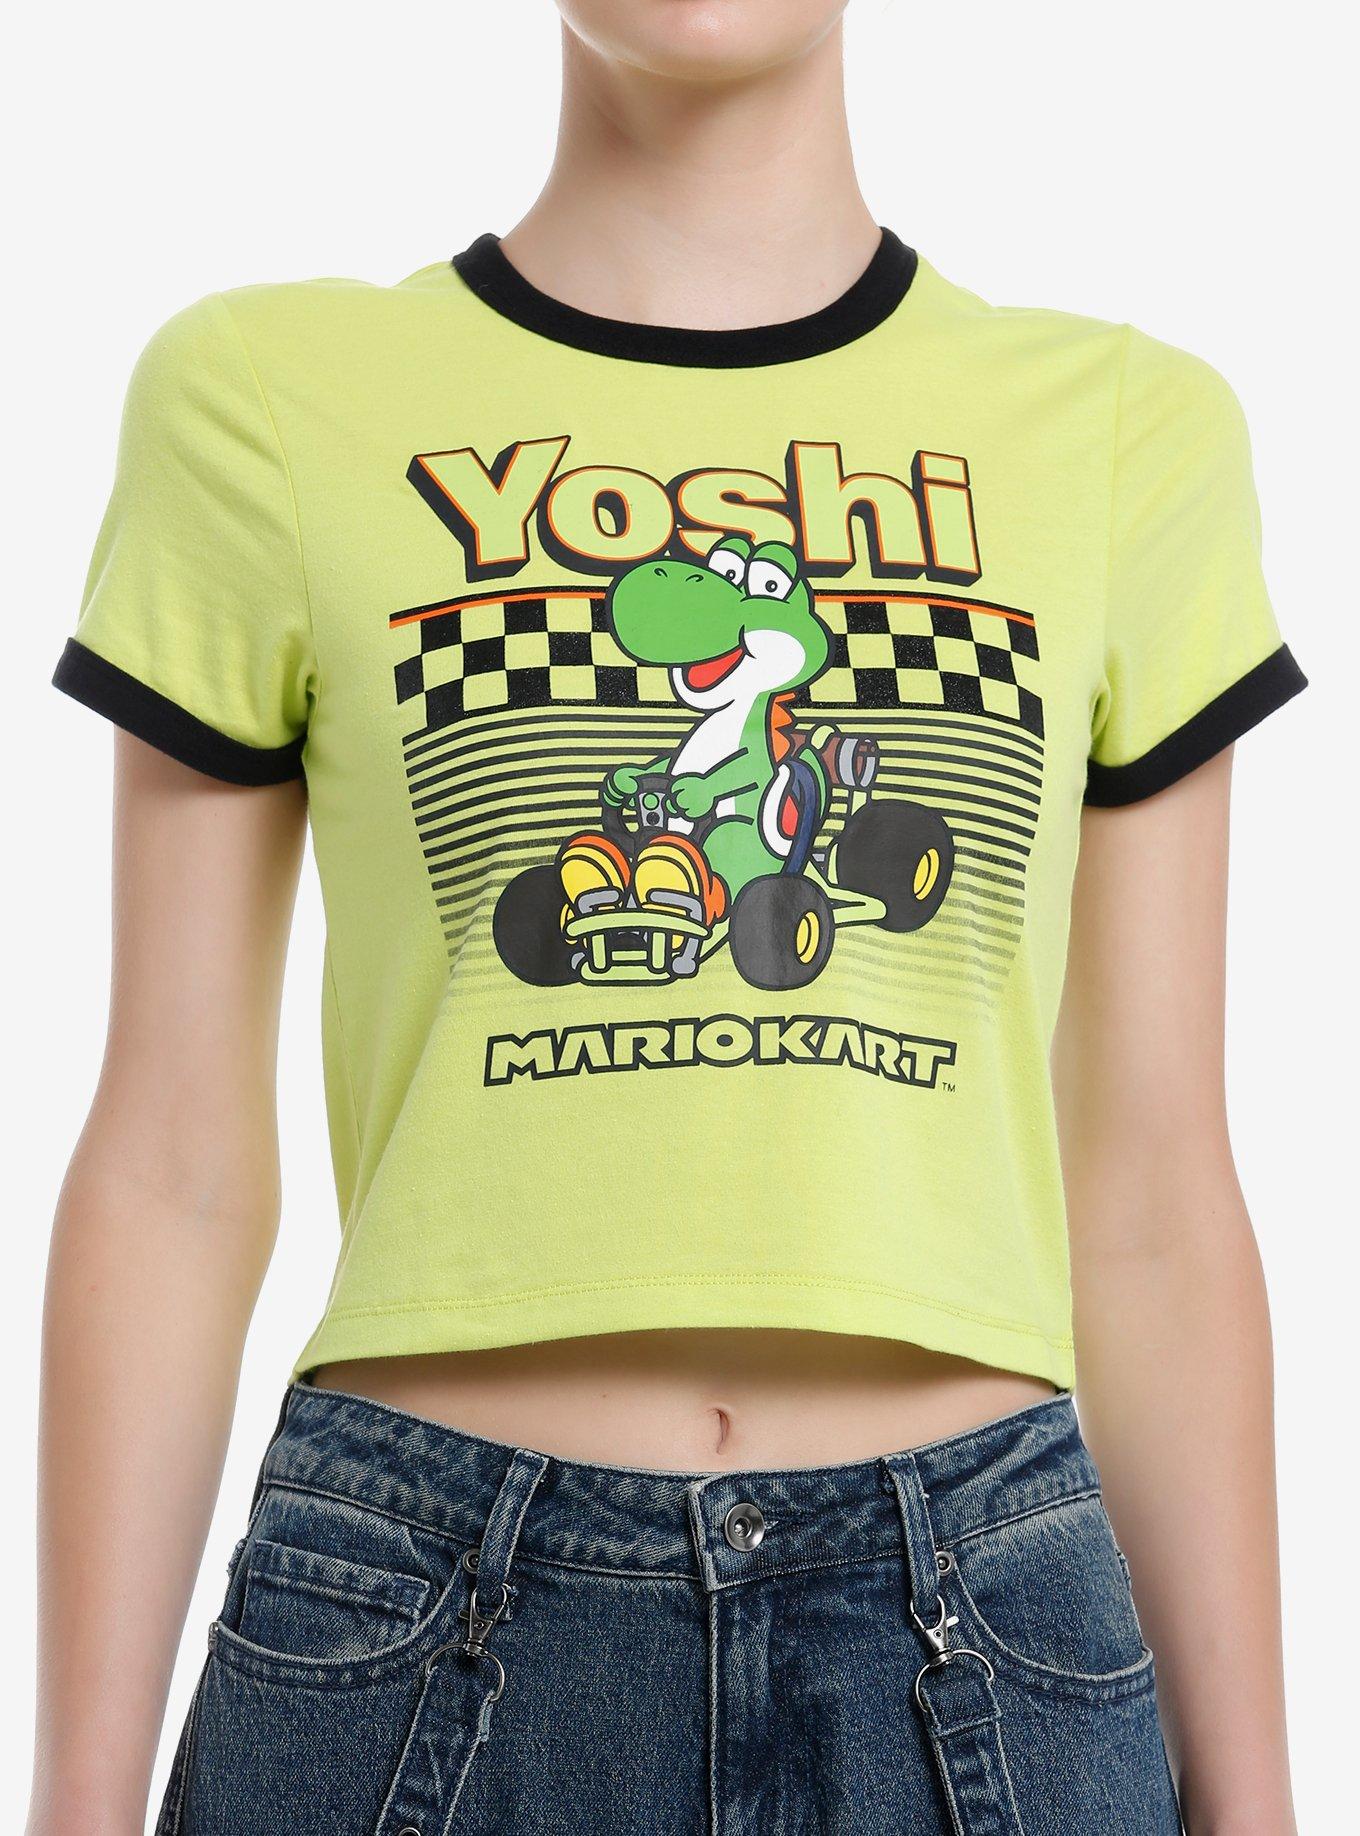 Mario Kart Yoshi Ringer Girls Baby T-Shirt, MULTI, hi-res